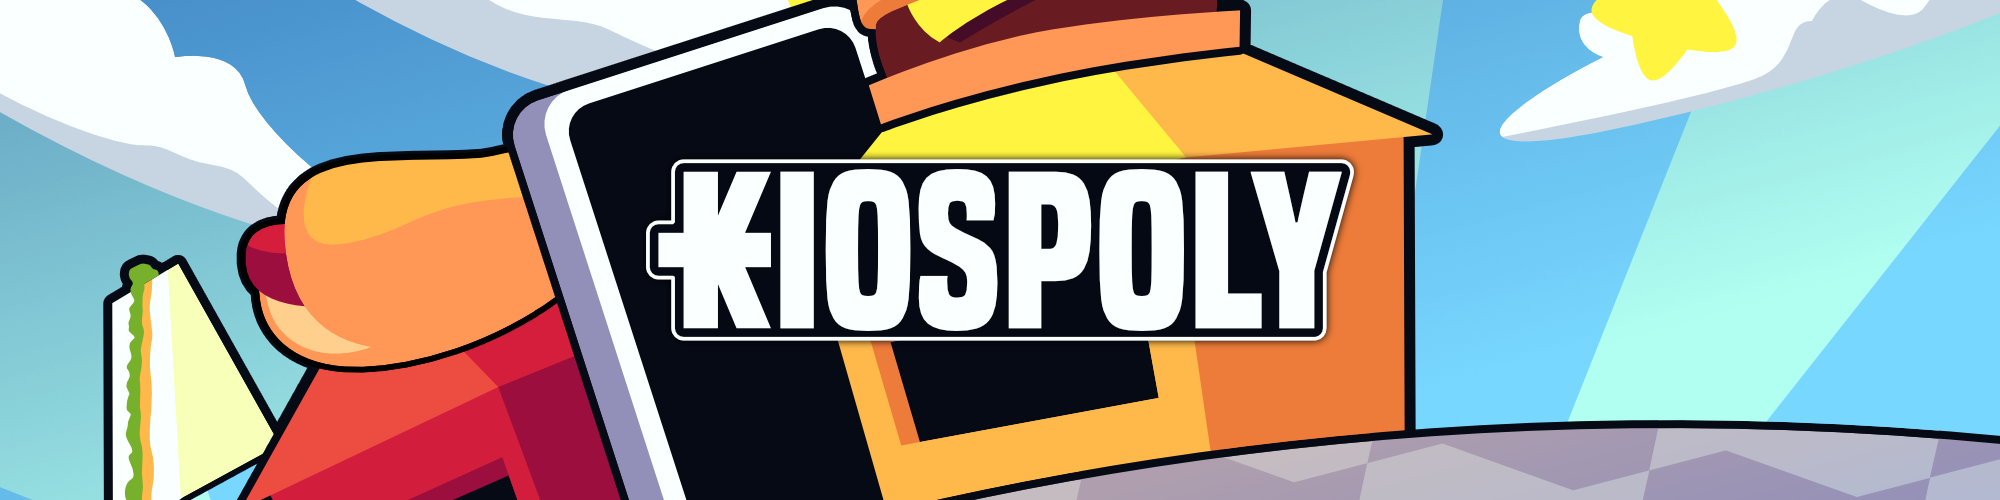 Kiospoly